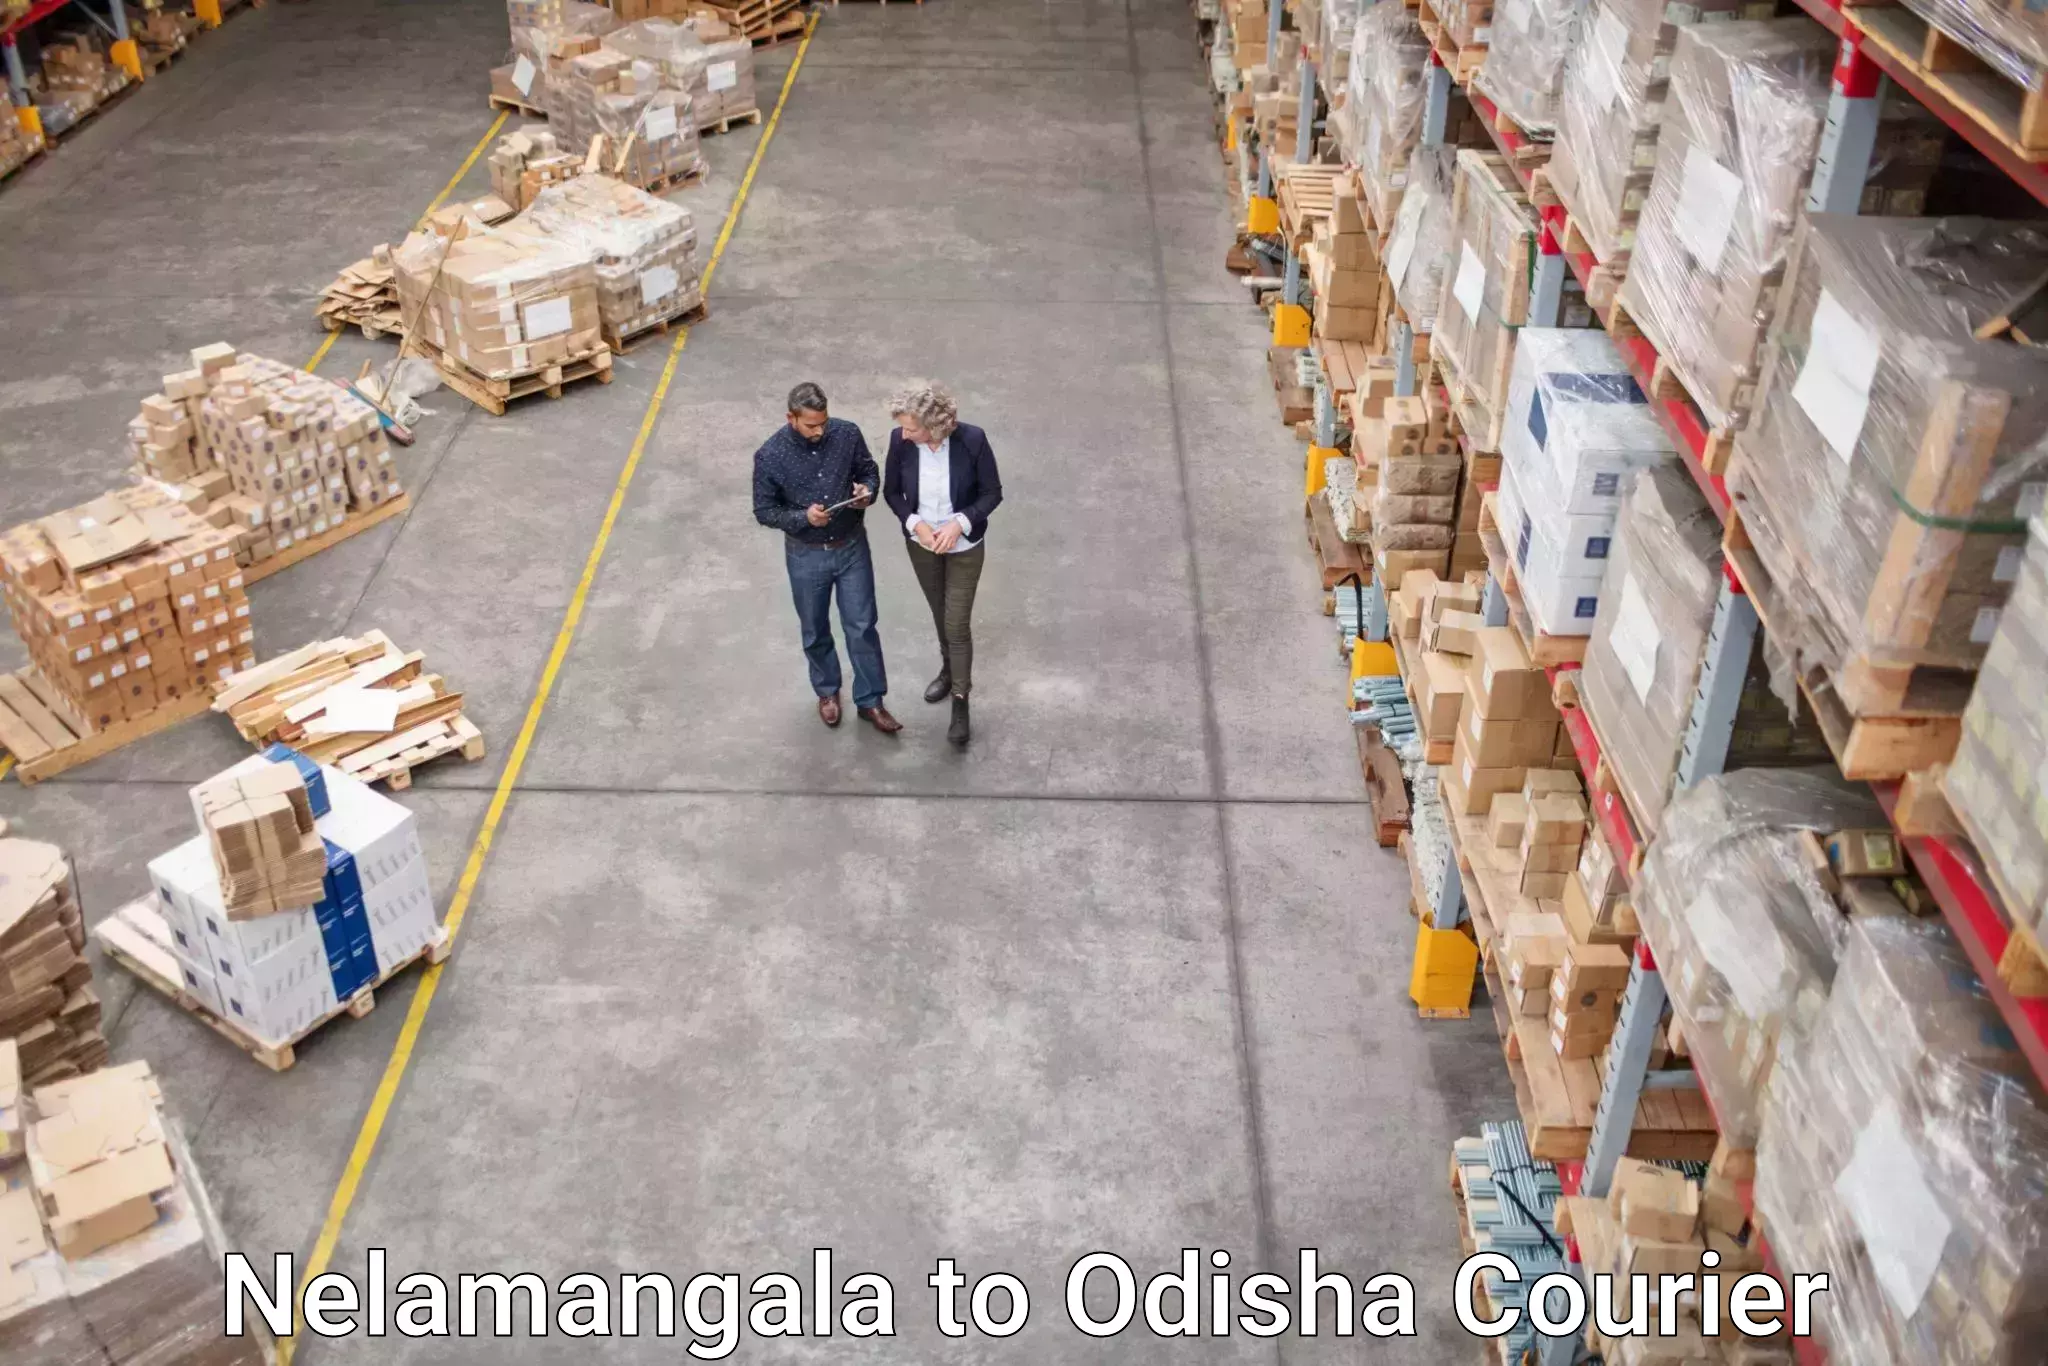 Full-service courier options Nelamangala to Odisha